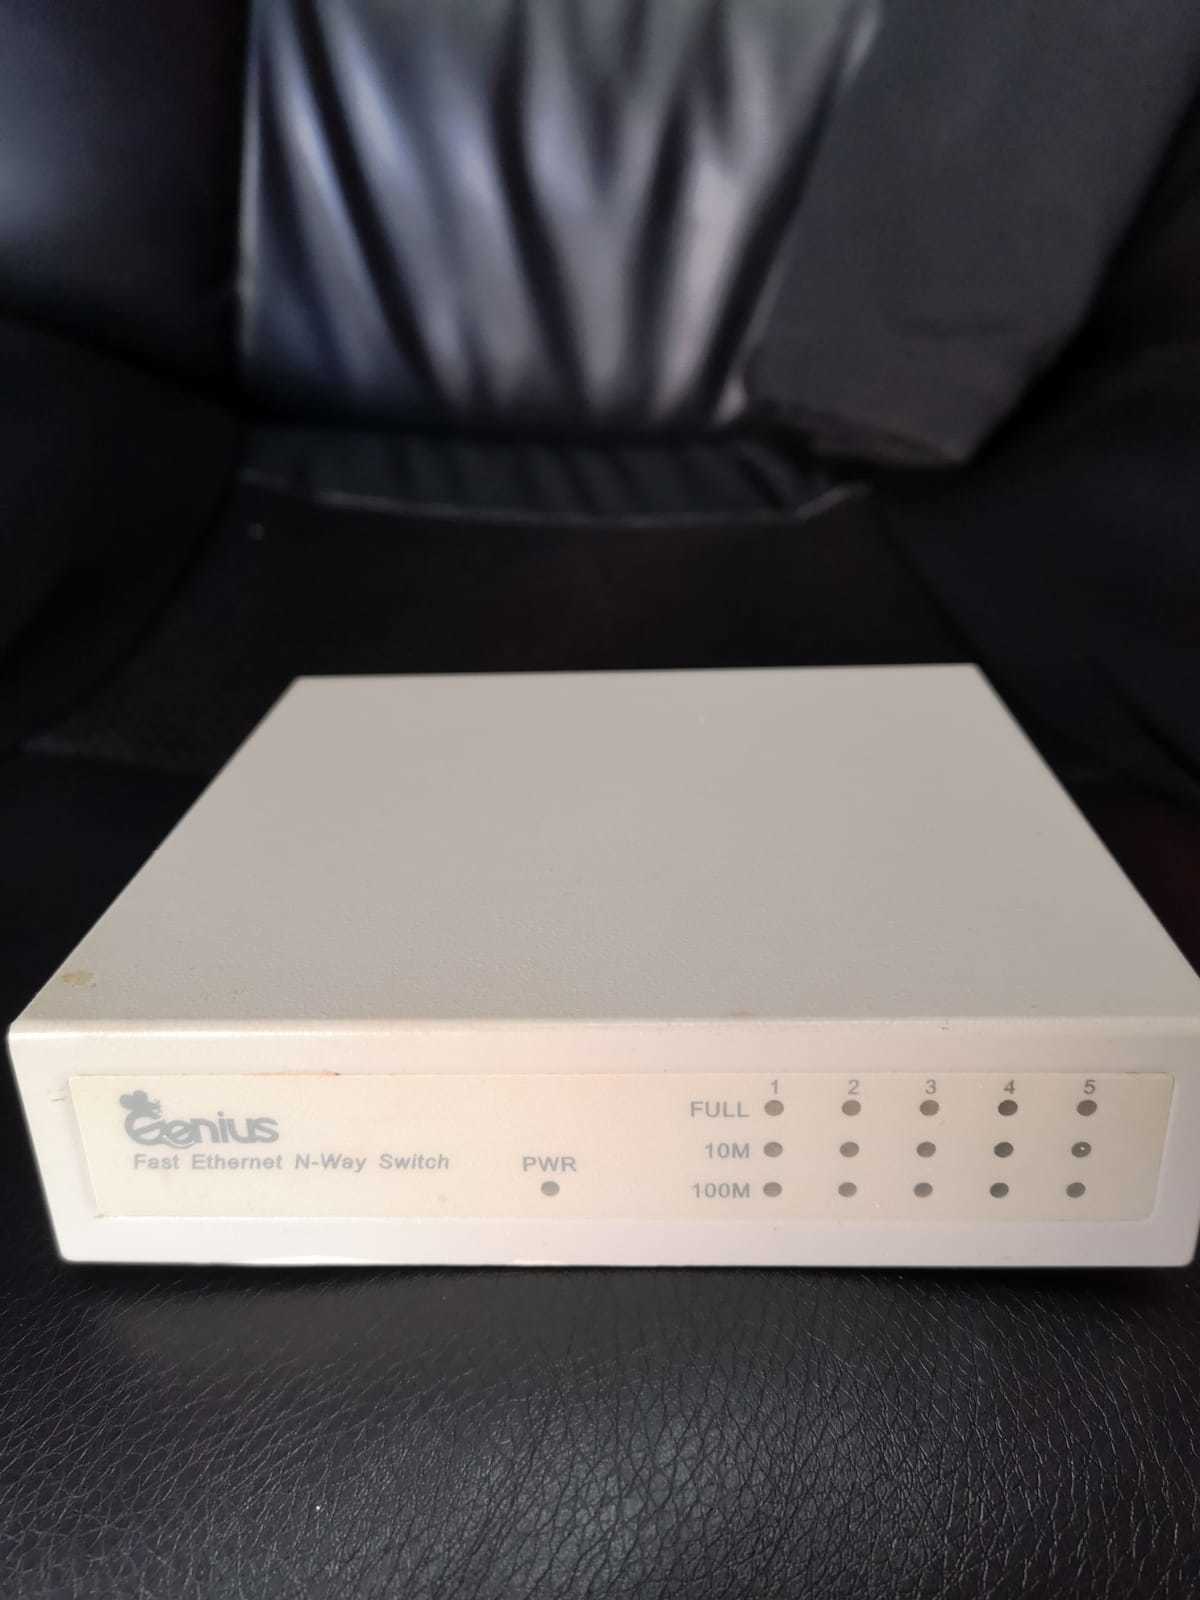 Genius GS4050N 5 Port Switch